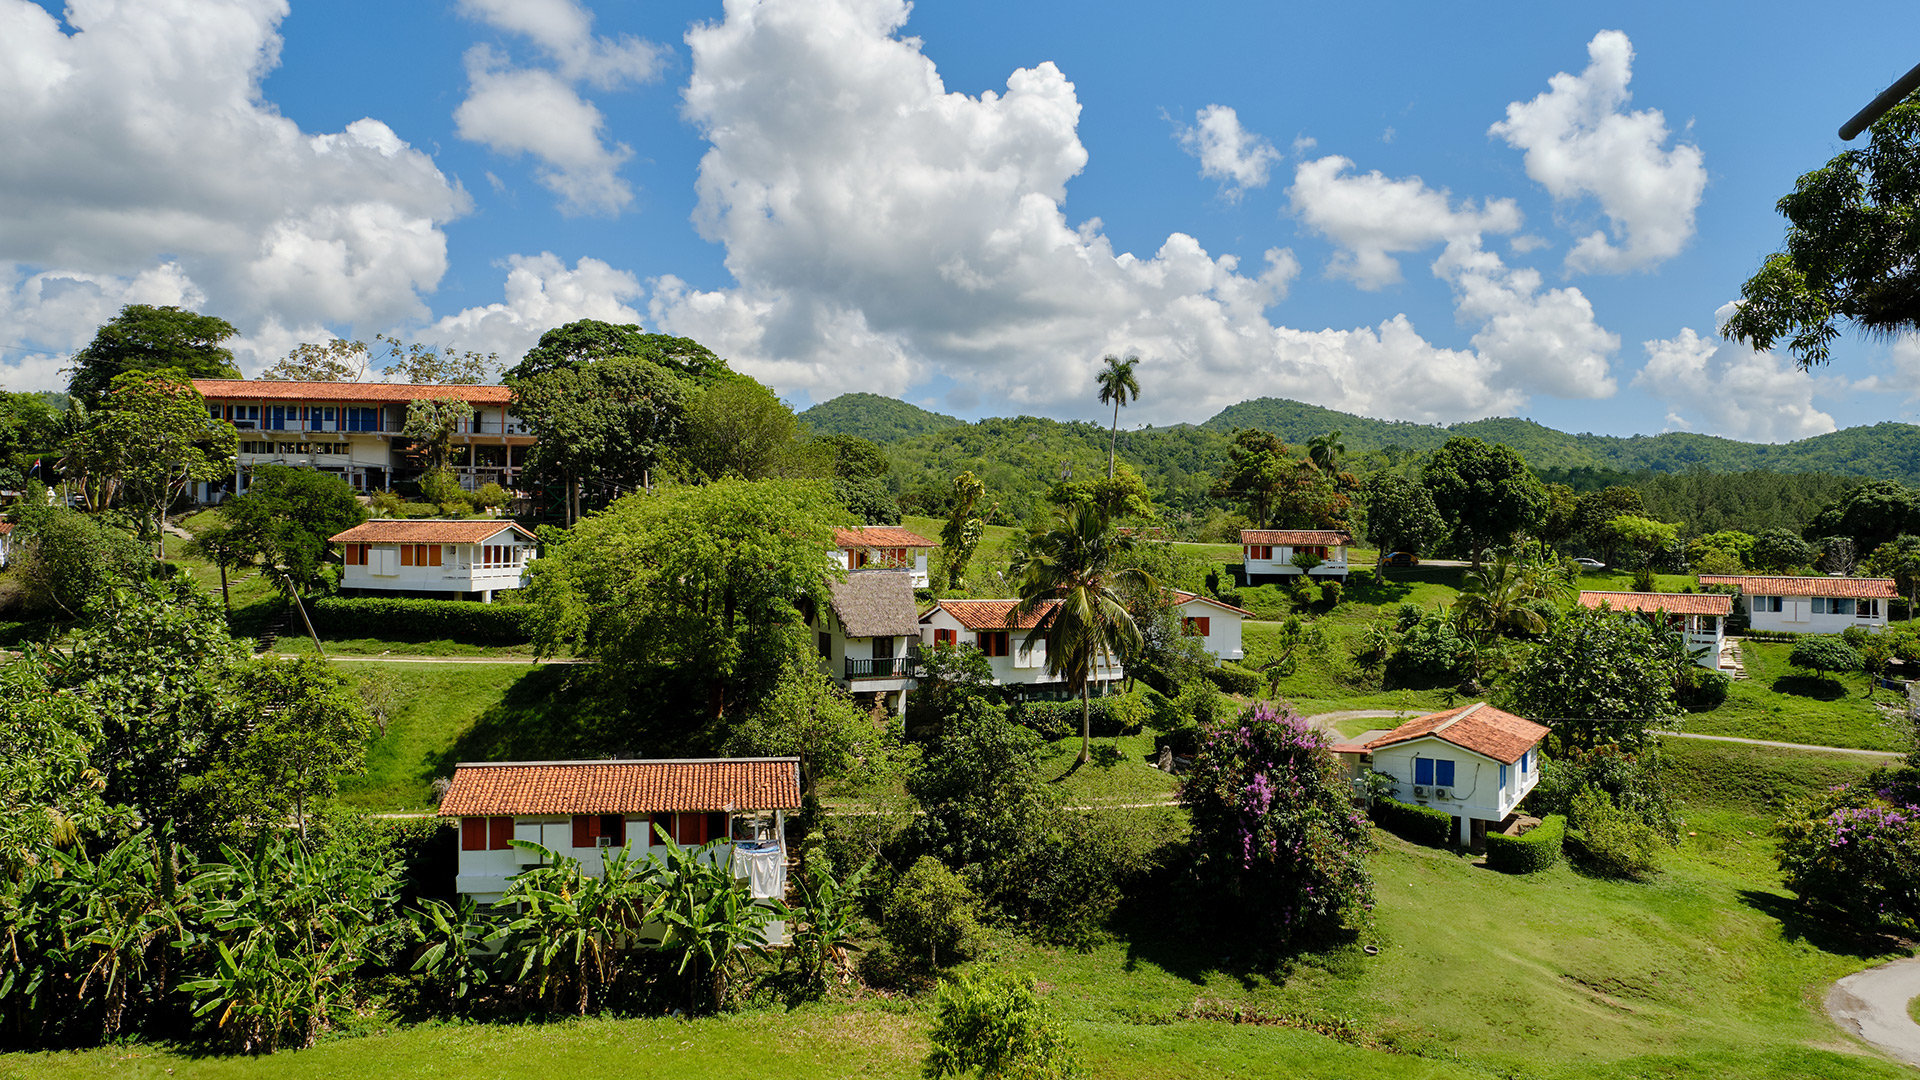 Primer Proyecto Ecoturístico en Cuba: “Las Terrazas”